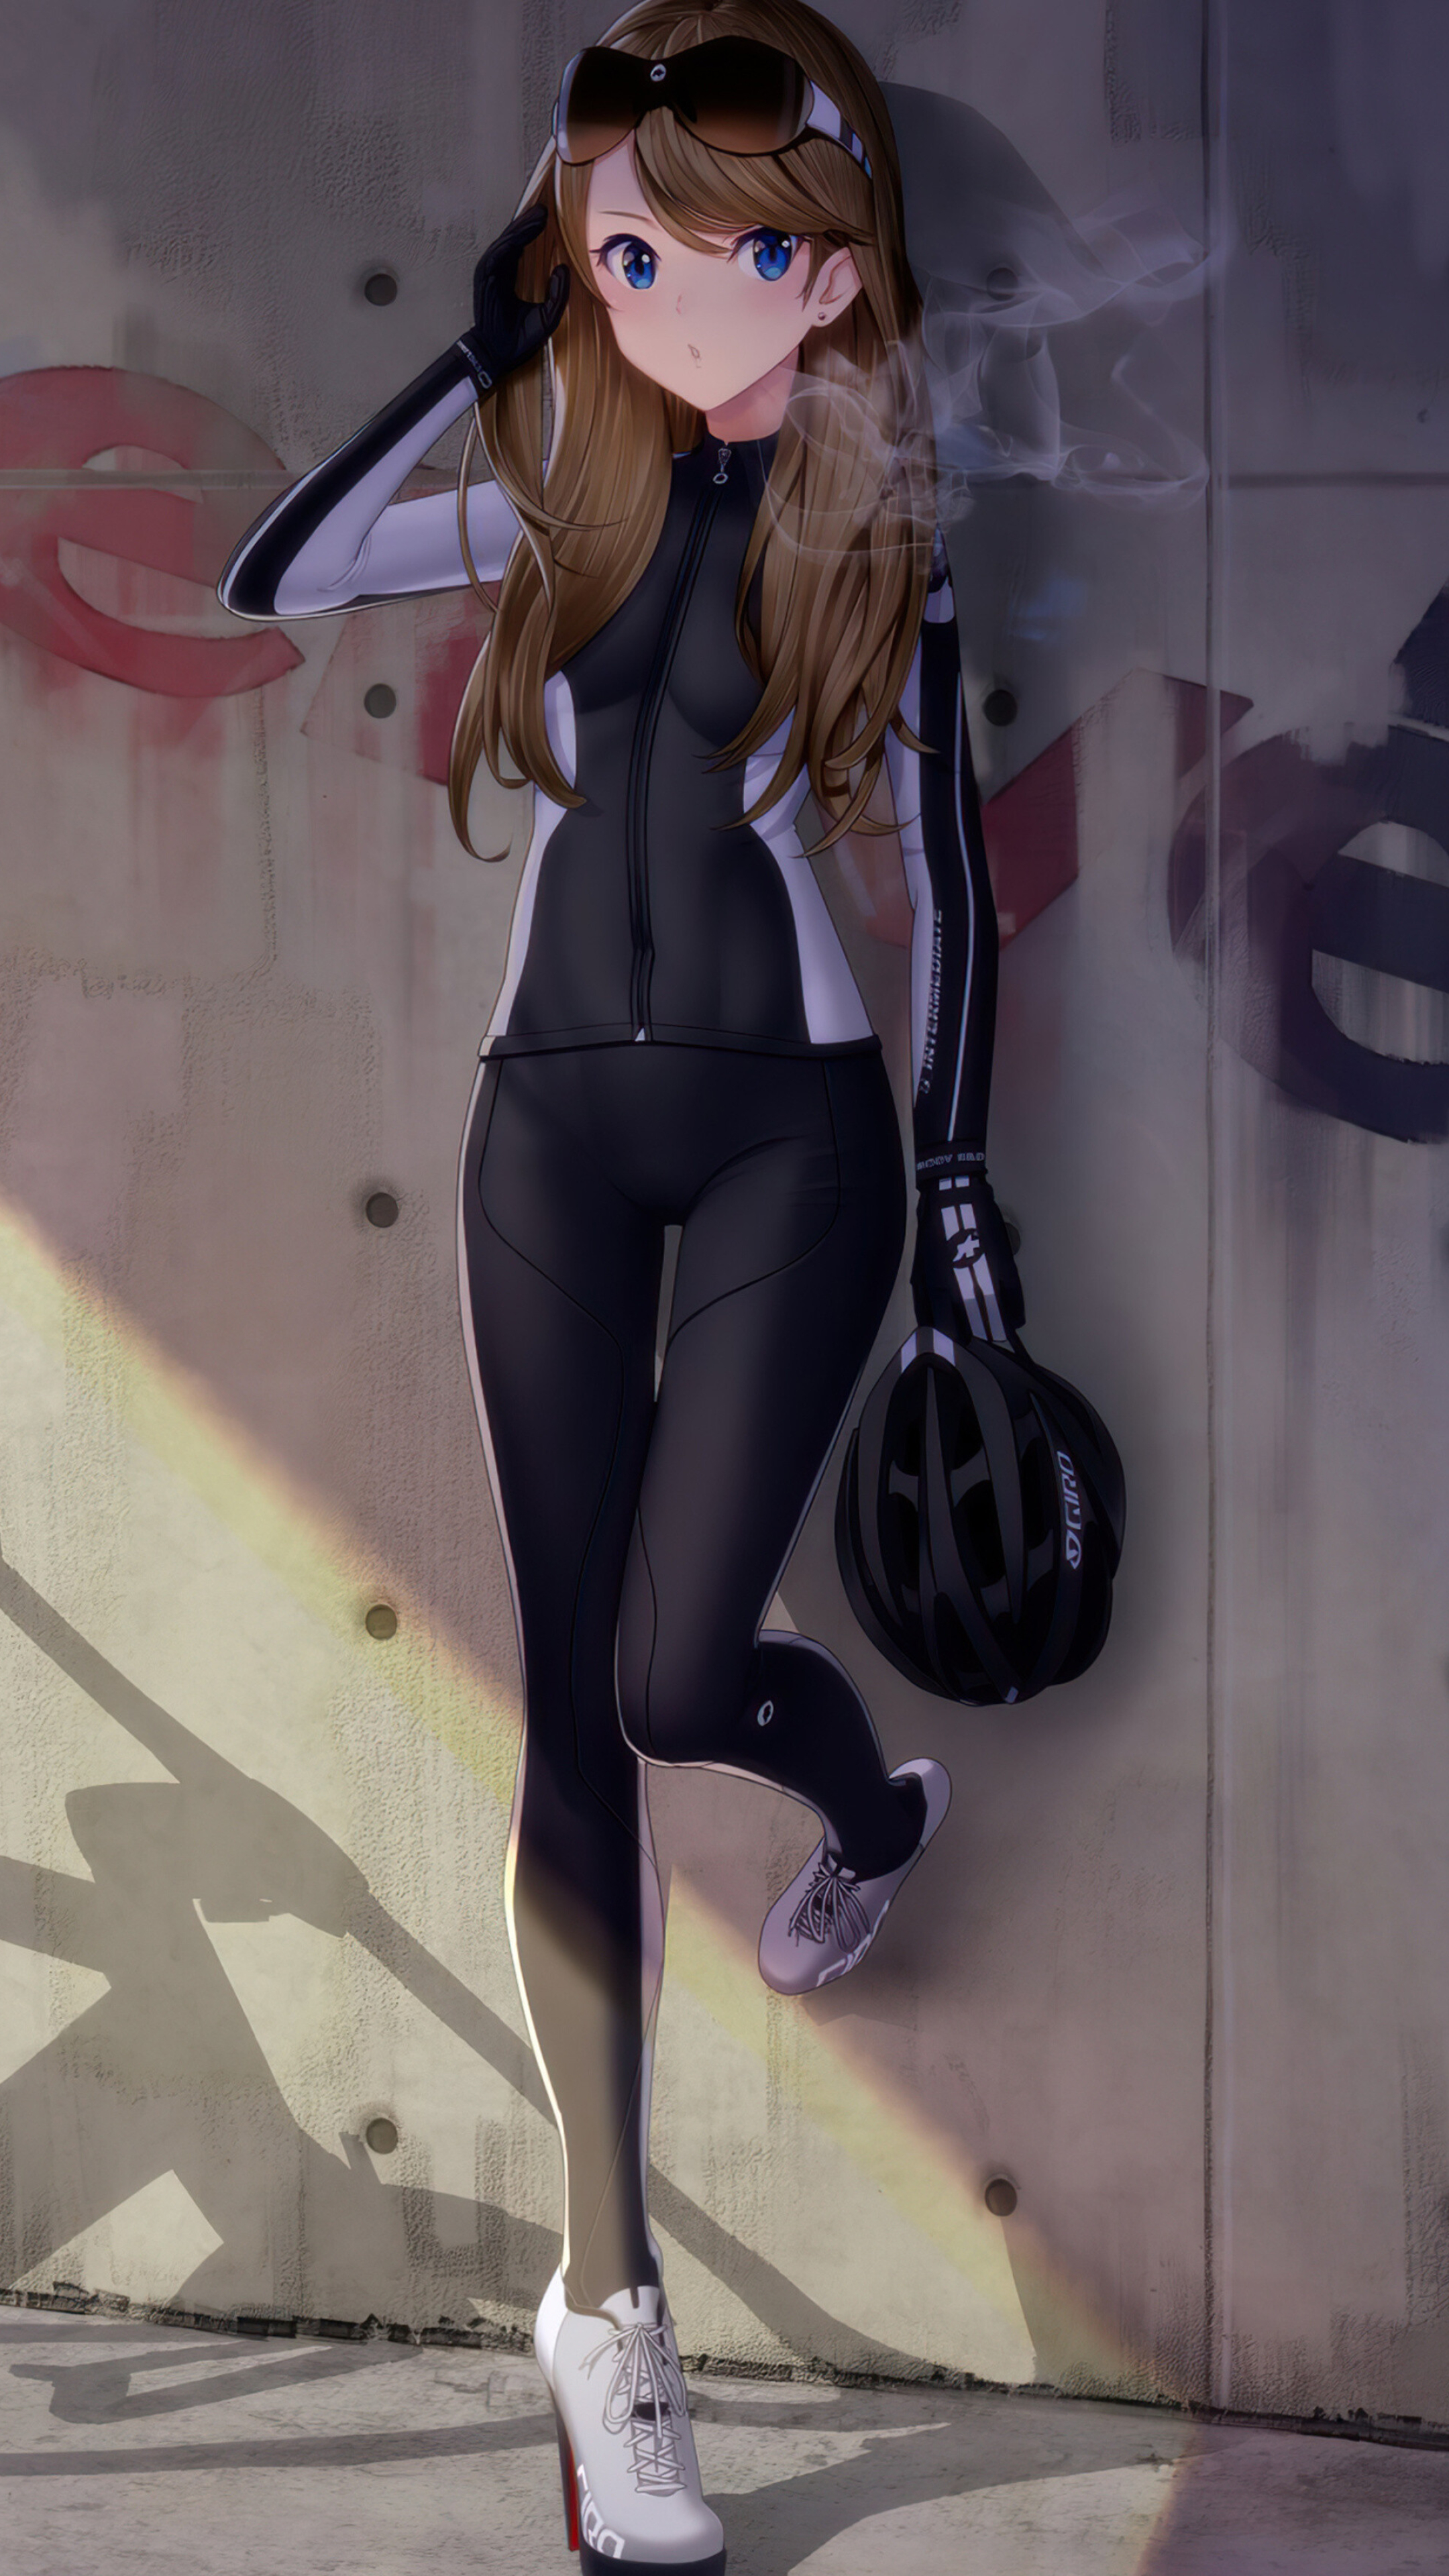 Girl and Bike: Anime girl wearing leggings, Bodysuit, Blue eyes, Cartoon character, Helmet. 2160x3840 4K Background.